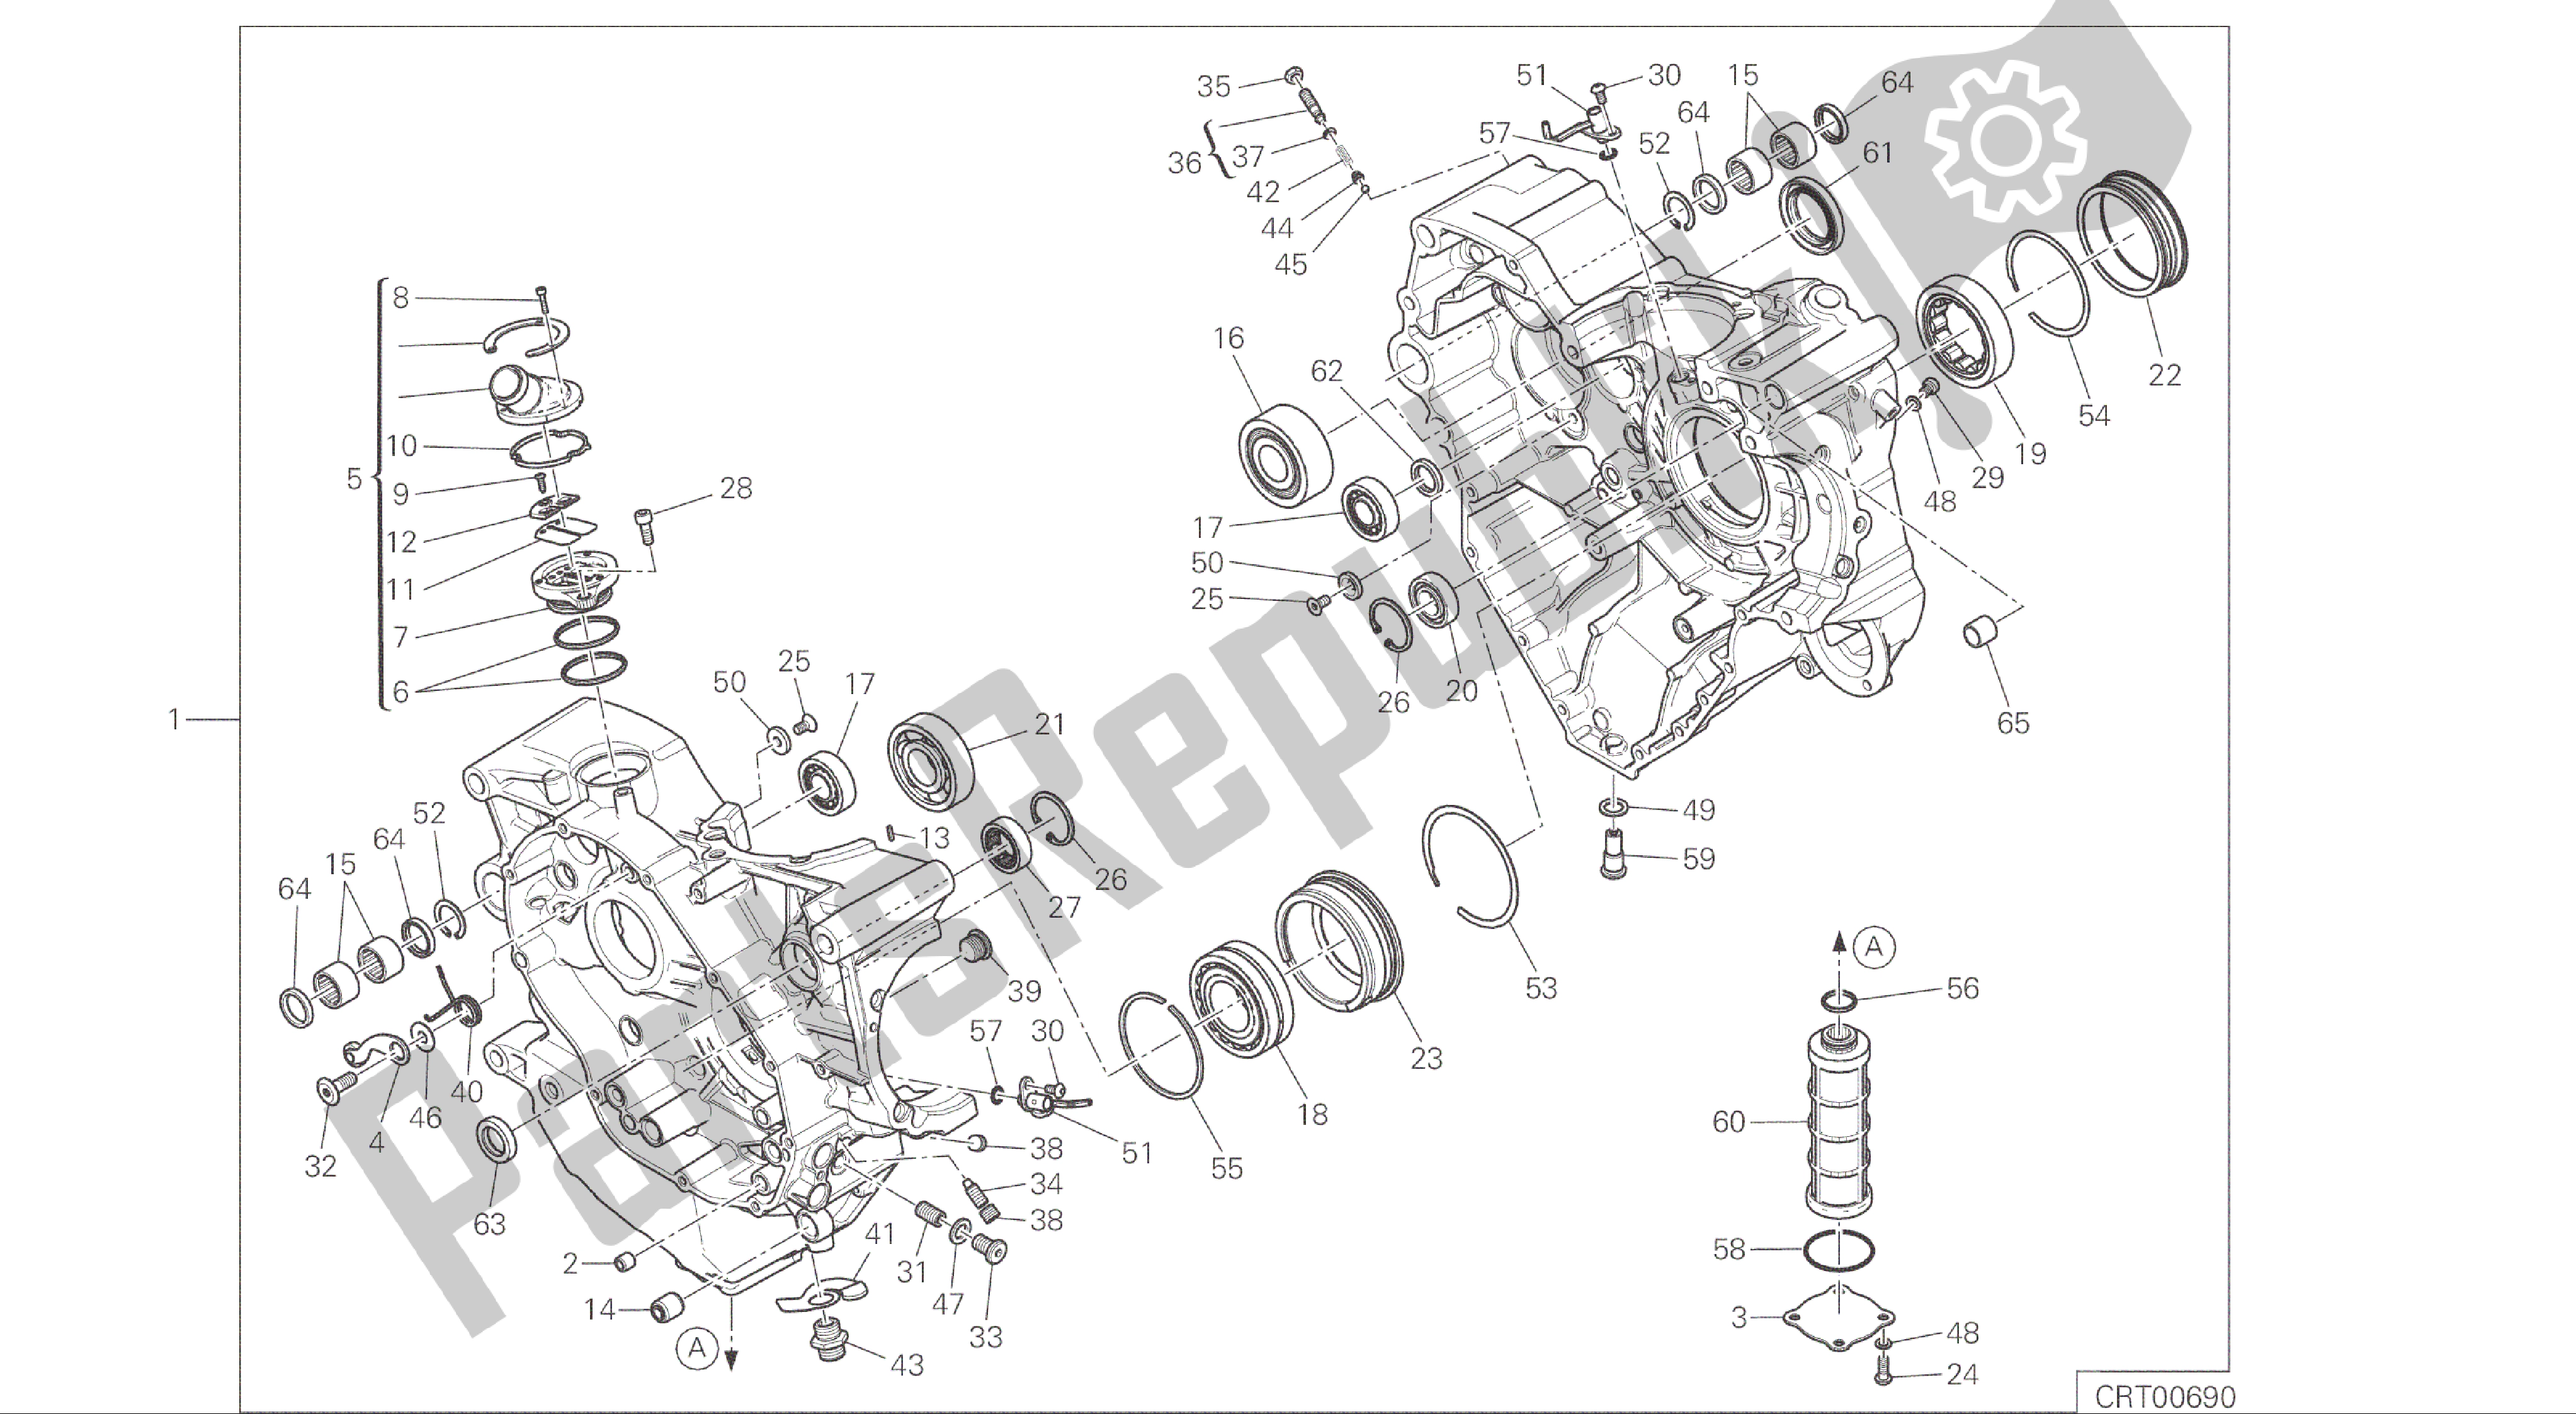 Tutte le parti per il Disegno 010 - Coppia Semicarter [mod: Ms1200; Xst: Aus, Eur, Fra, Jap] Gruppo Motore del Ducati Multistrada 1200 2015